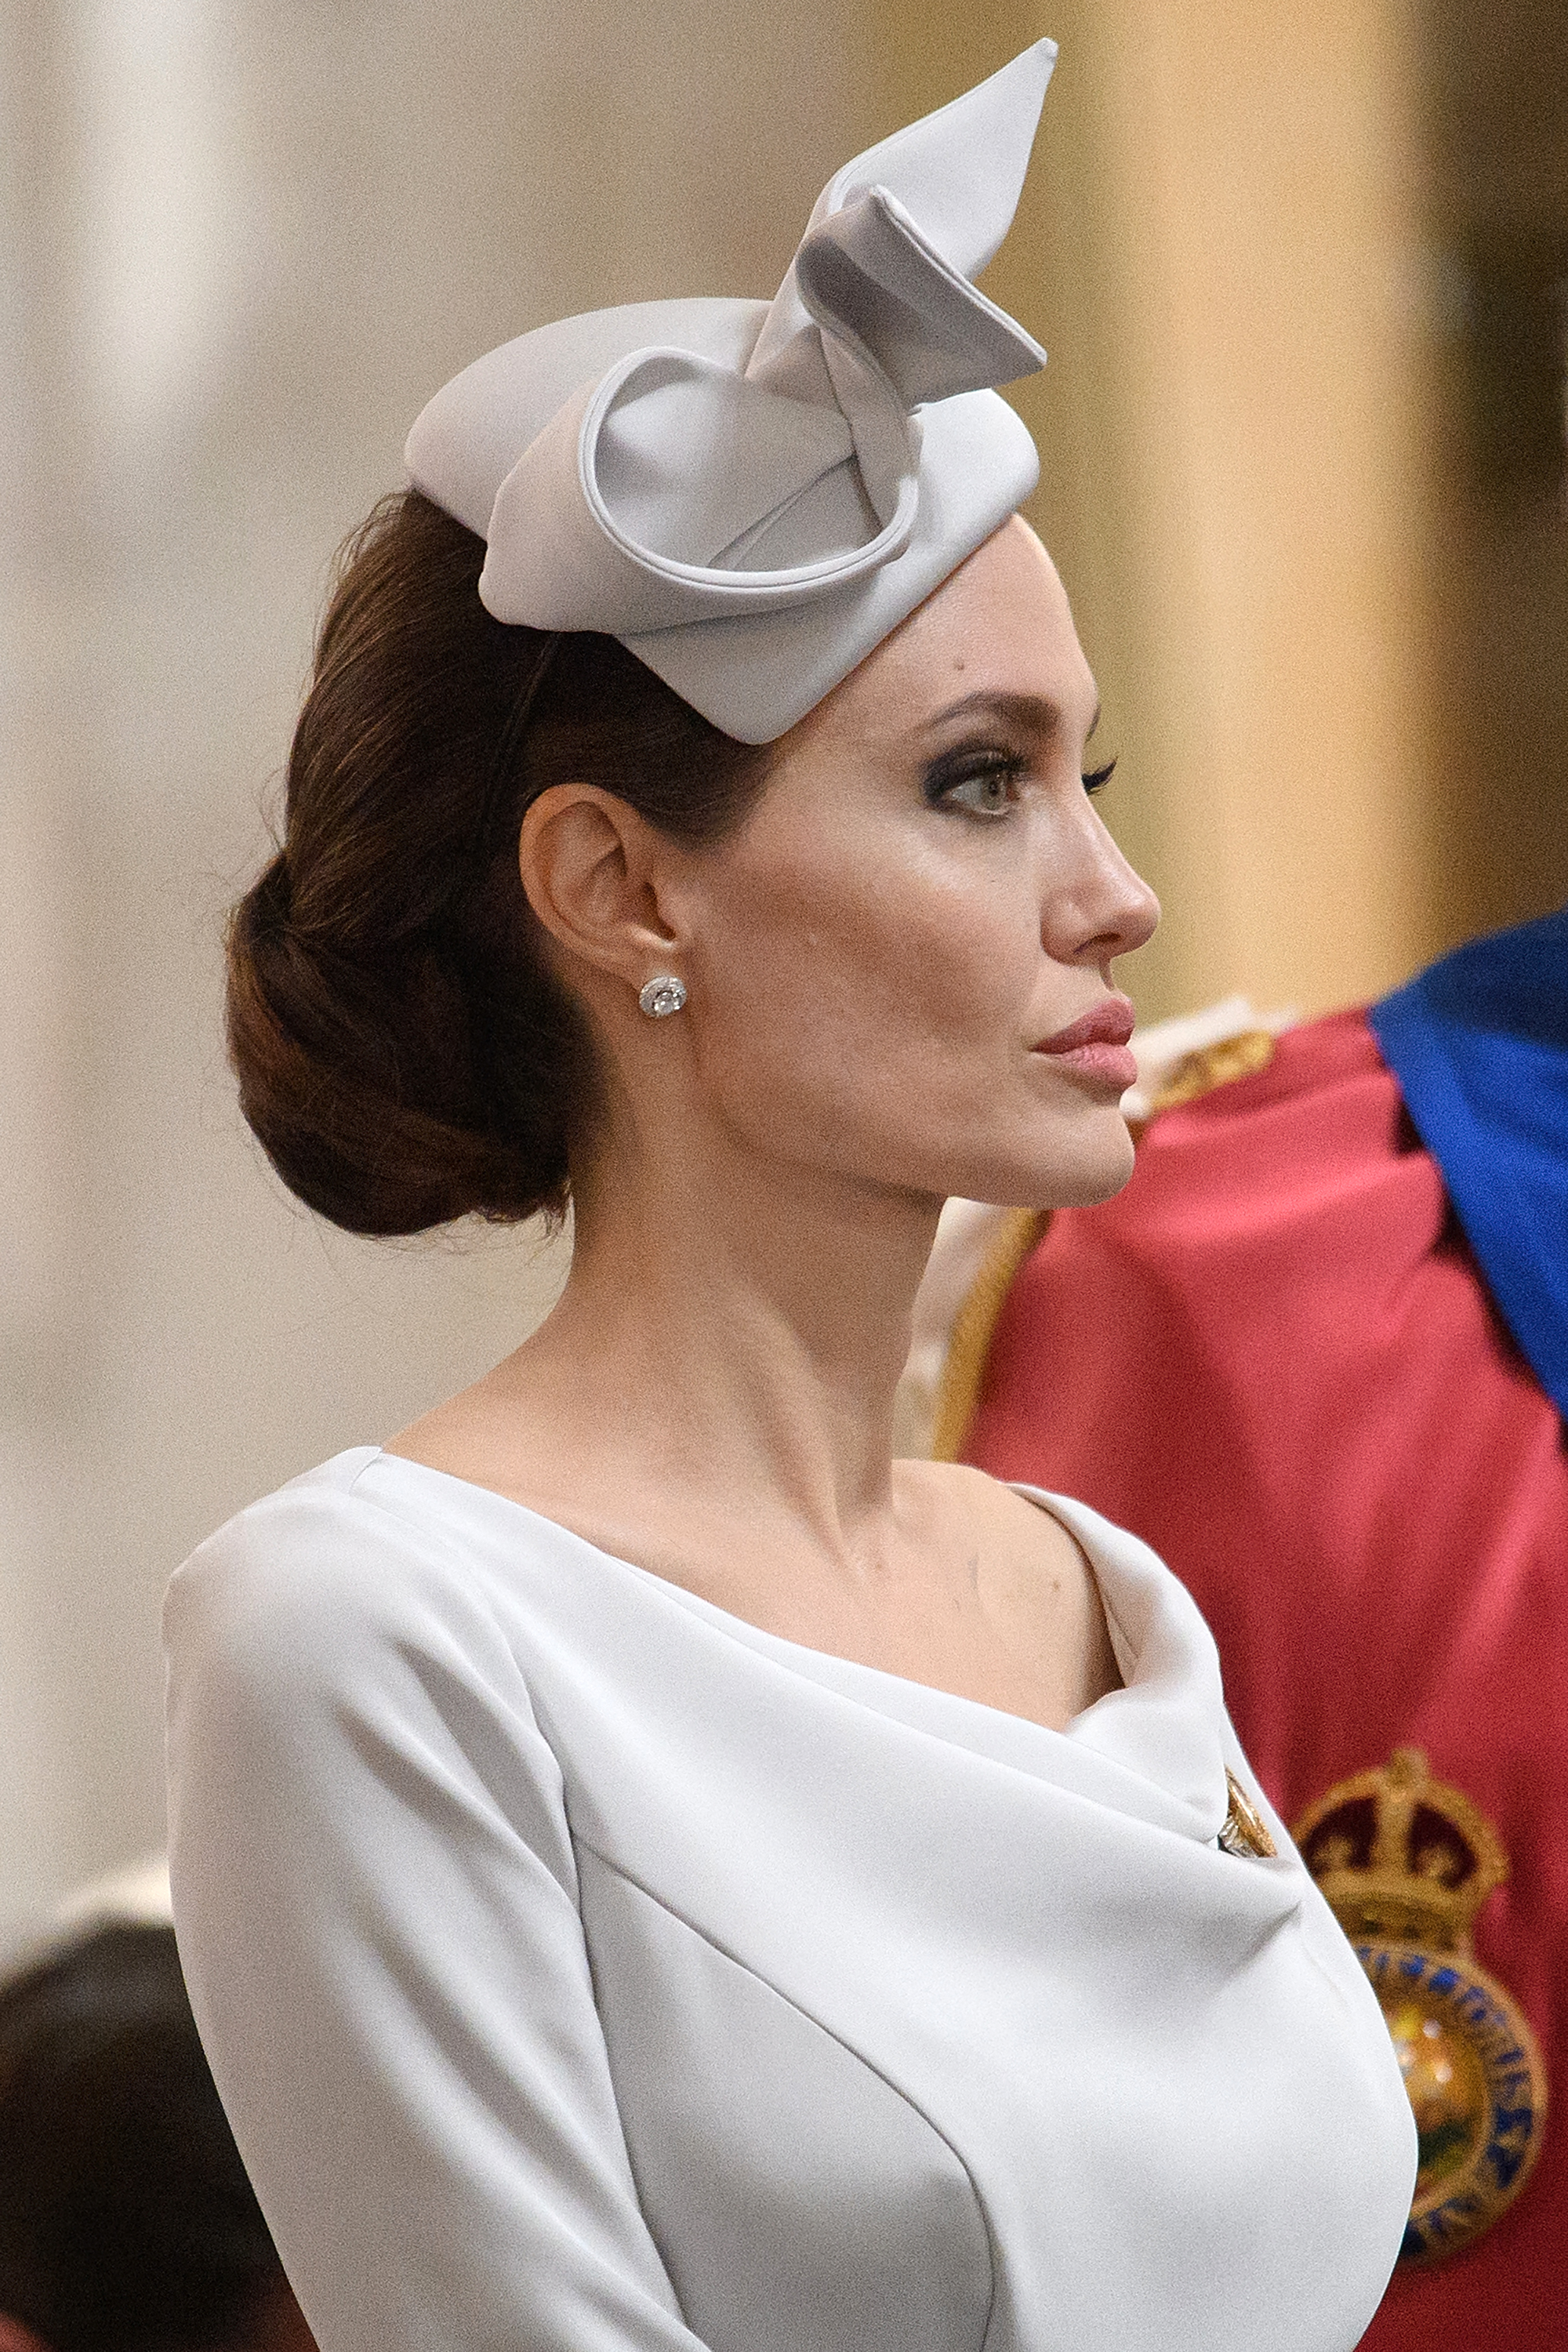 Angelina Jolie kommt vor dem Gedenk- und Einweihungsgottesdienst anlässlich des 200-jährigen Bestehens des Most Distinguished Order of St. Michael and St. George in der St. Paul's Cathedral in London am 28. Juni 2018 an. | Quelle: Getty Images